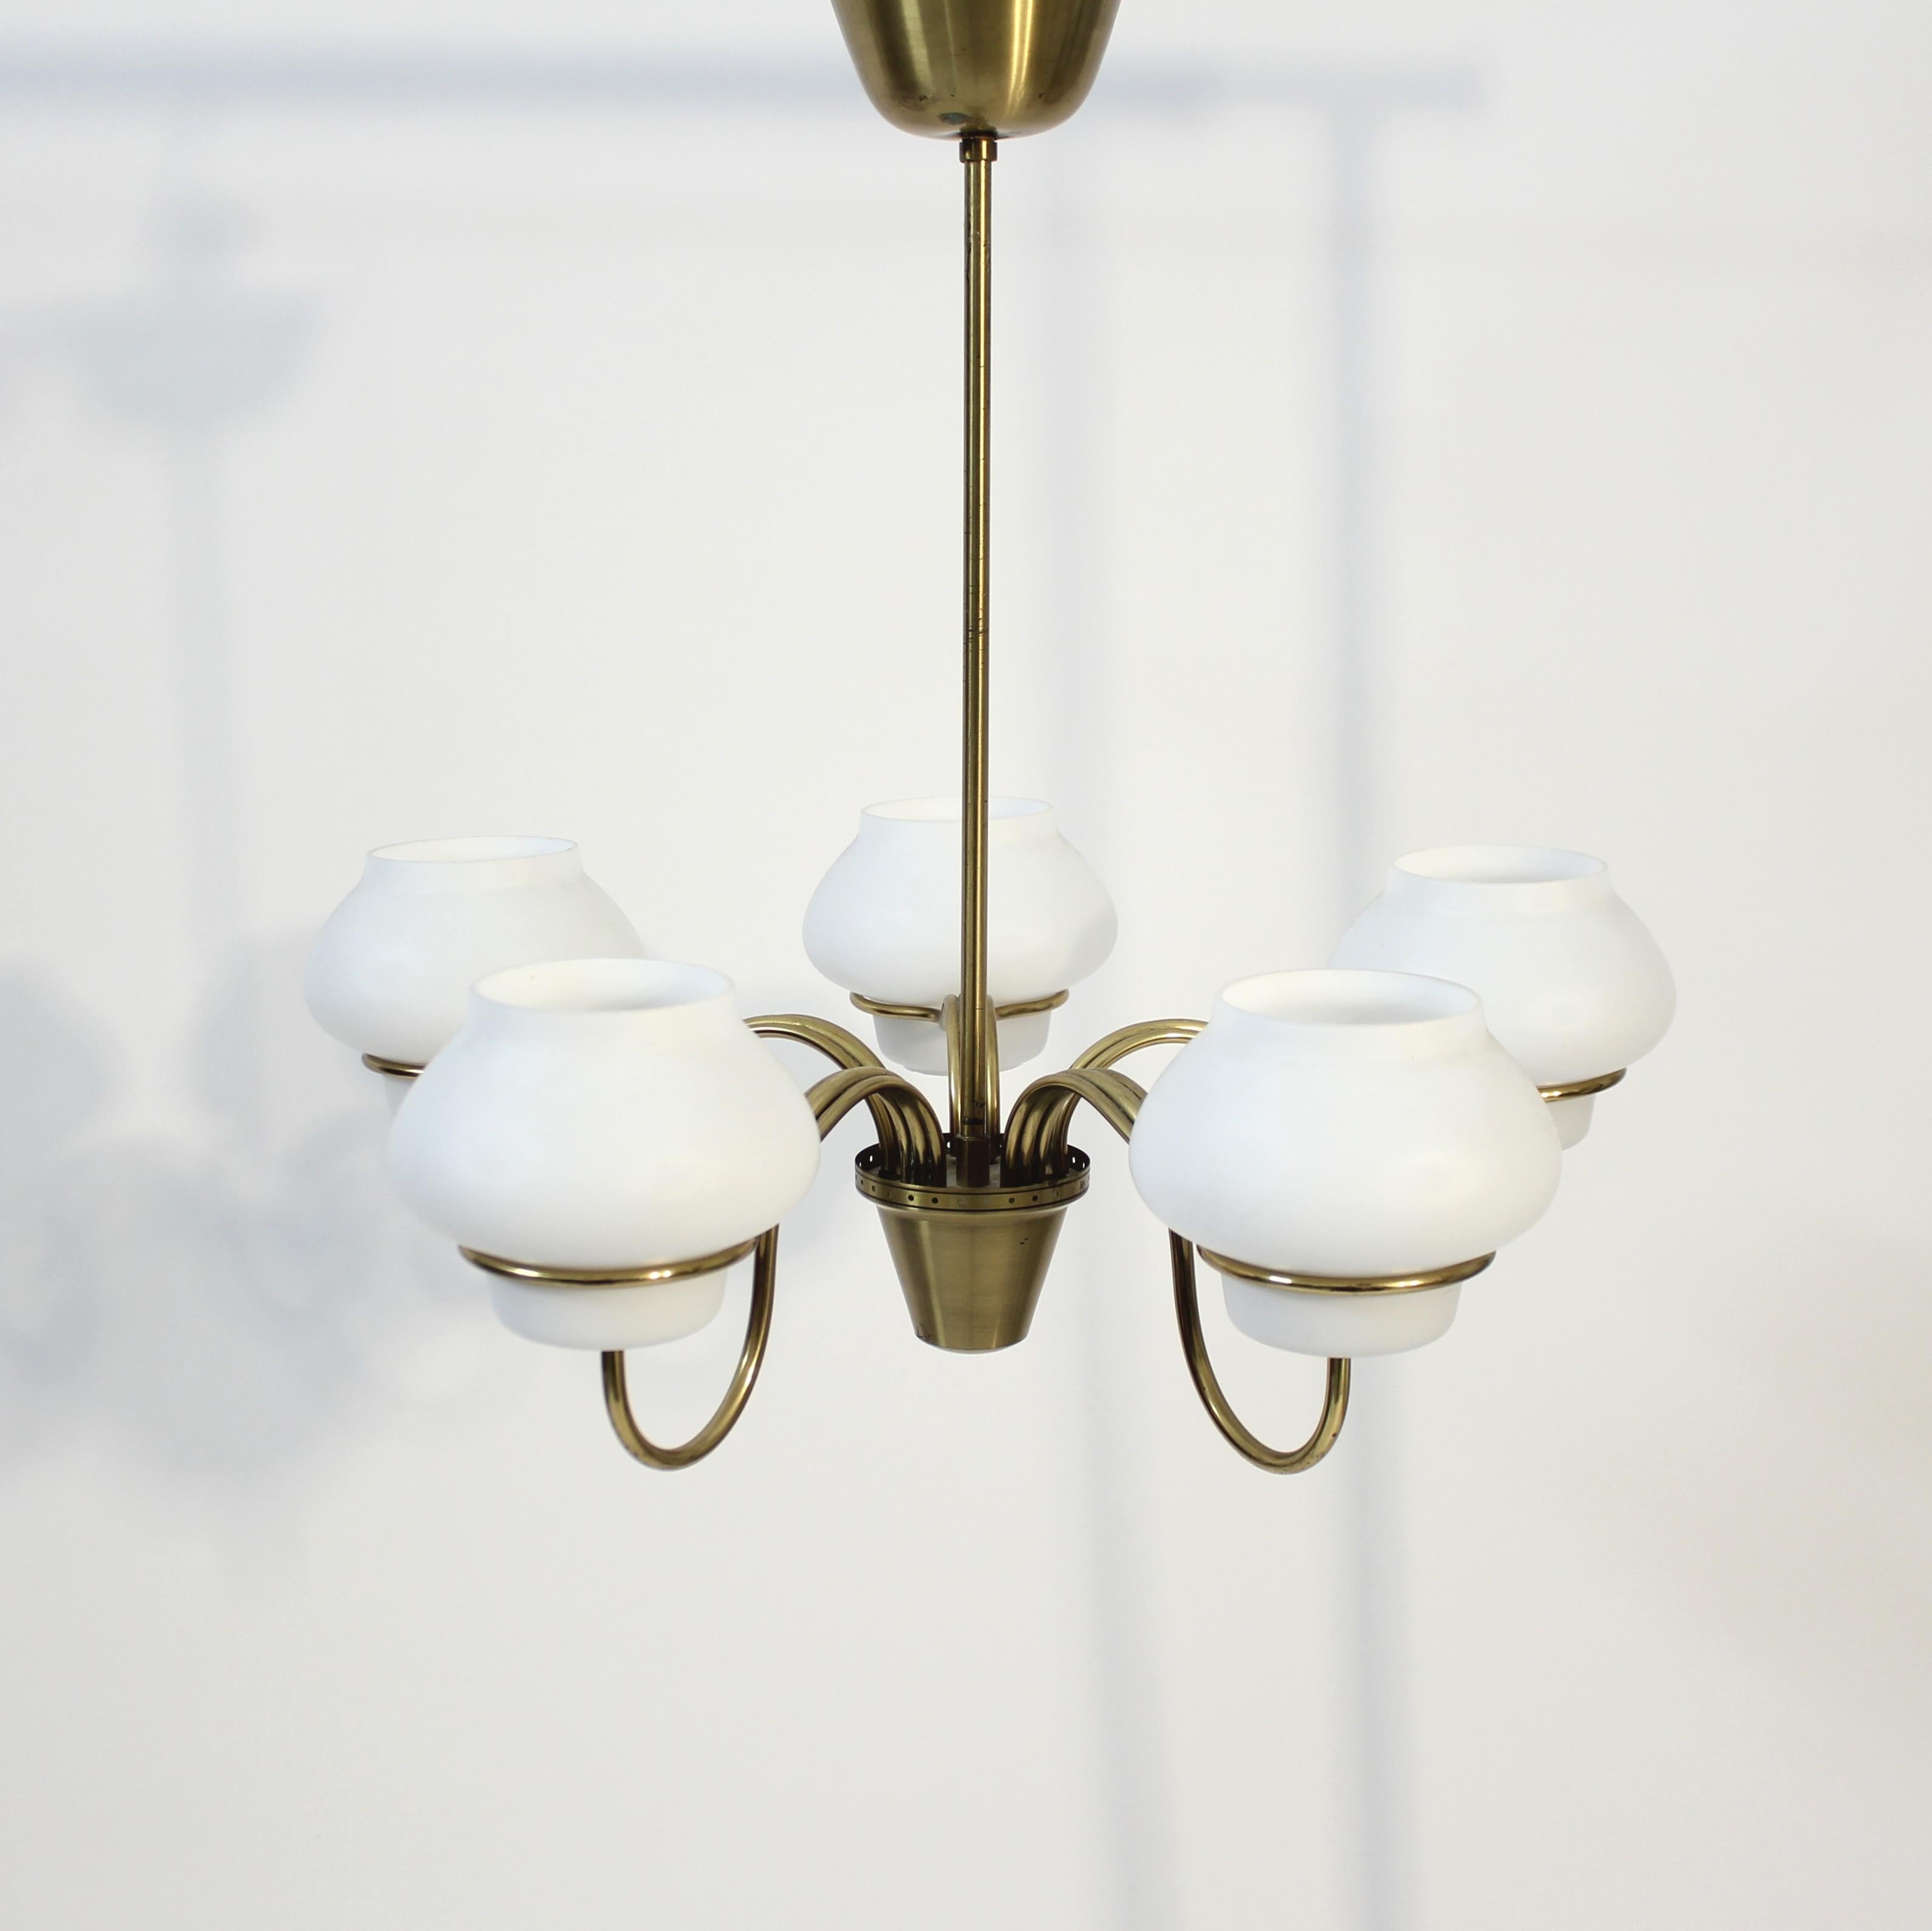 Scandinavian Modern Swedish Modern chandelier attributed to Gunnar Asplund for ASEA, 1950s